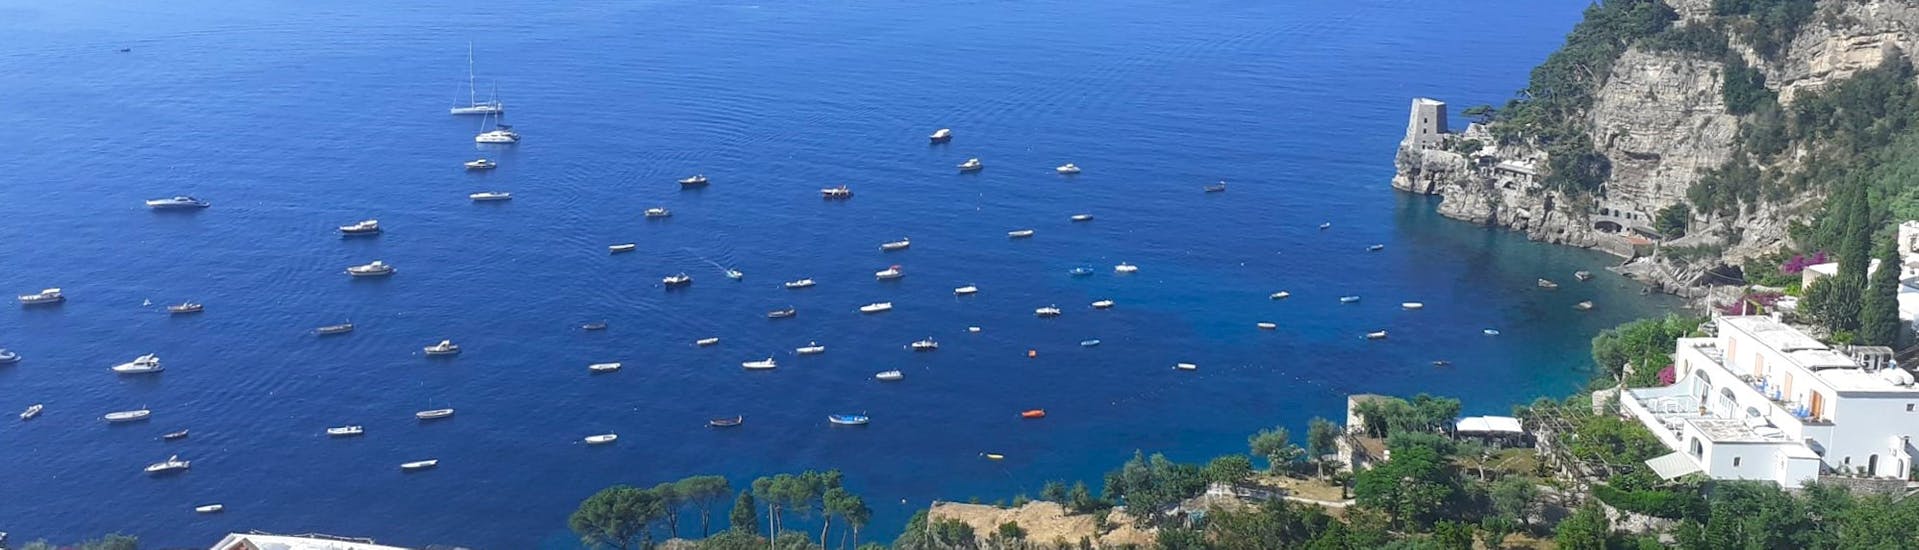 Vue de la côte amalfitaine depuis le ciel pendant la Balade privée en bateau sur la côte amalfitaine depuis Positano - Demi-journée.